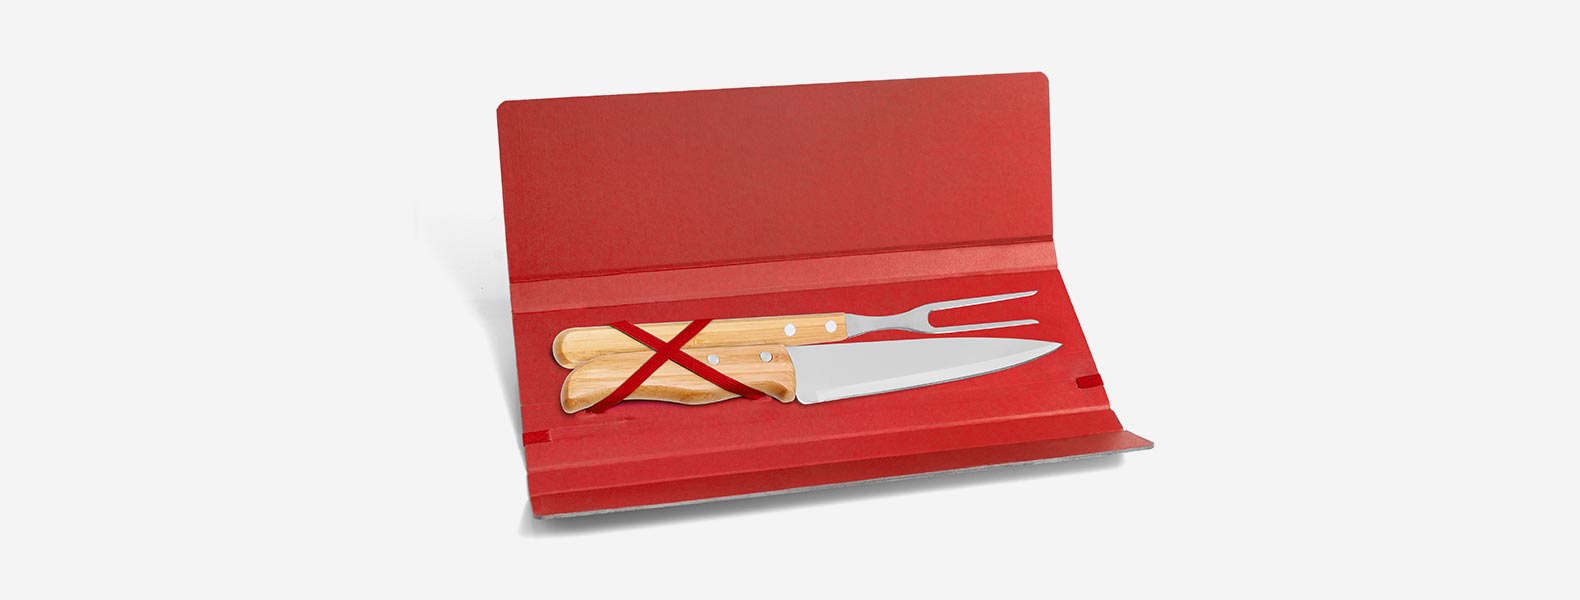 Conjunto composto por uma faca 7” e um garfo trinchante, ambos com cabos em Bambu e lâminas em Aço Inox com rebites resistentes. Estão organizados em uma pasta vermelha com elásticos.